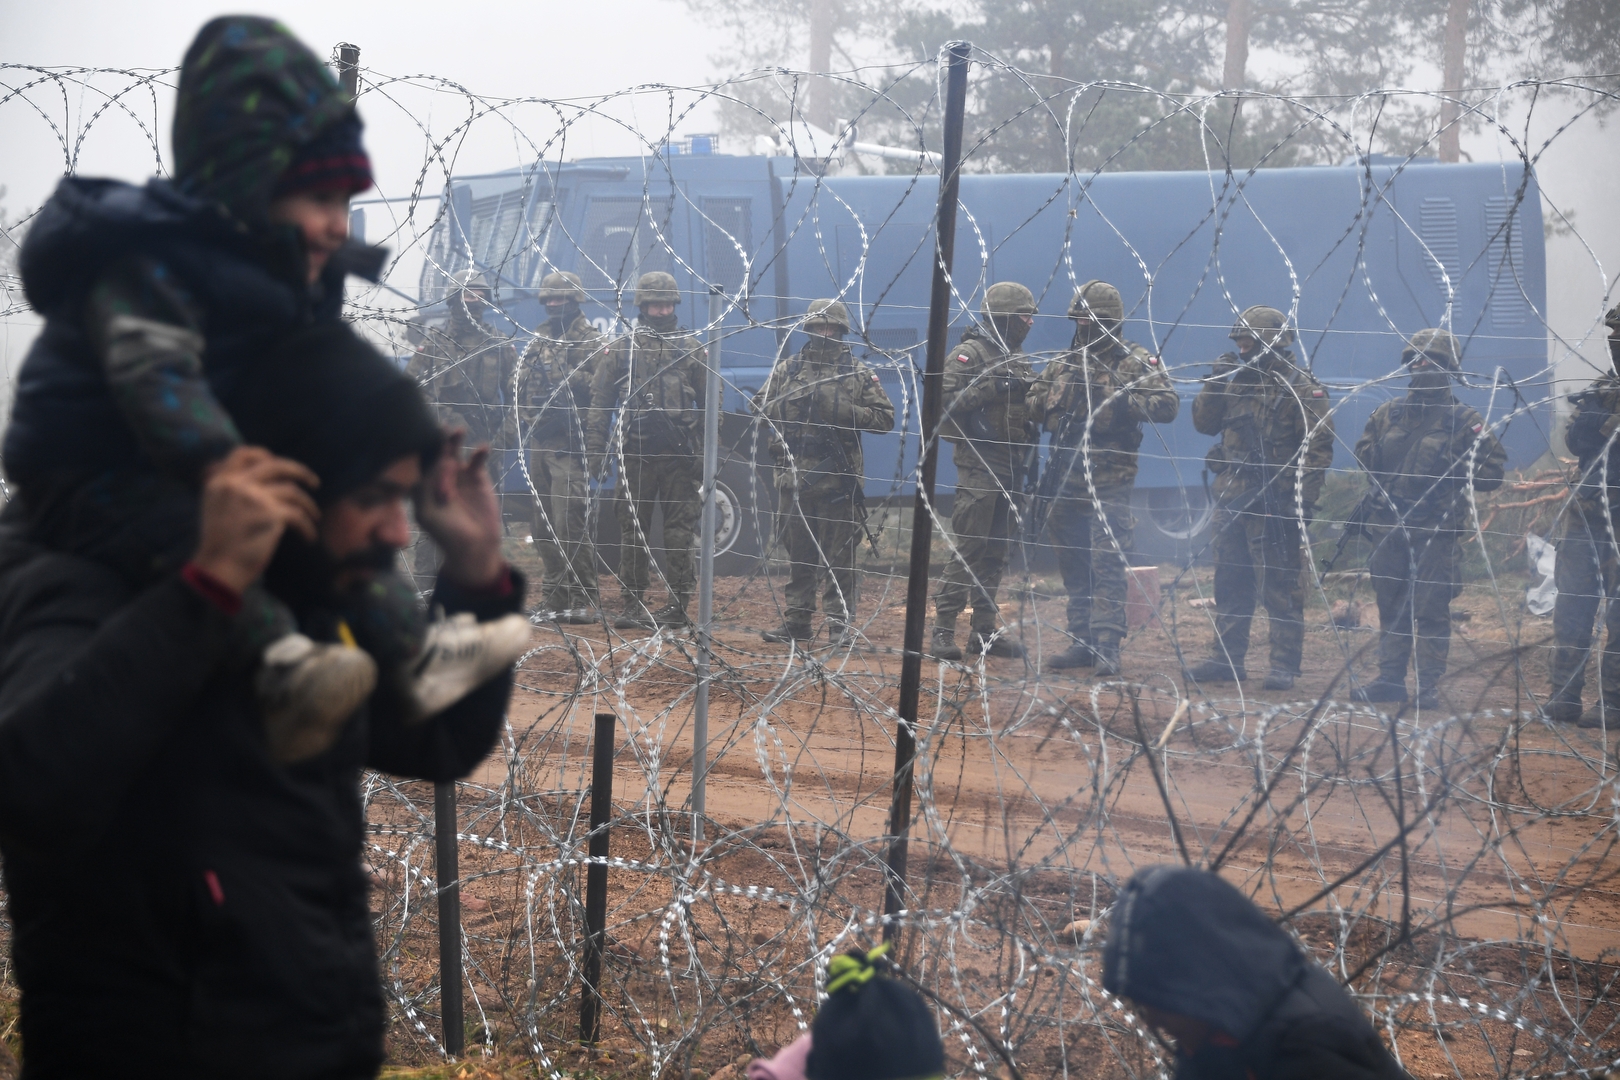 بولندا تعلن عن اجتياز عشرات العراقيين حدودها من بيلاروس وتحذر من التحضيرات لعملية تسلل كبرى